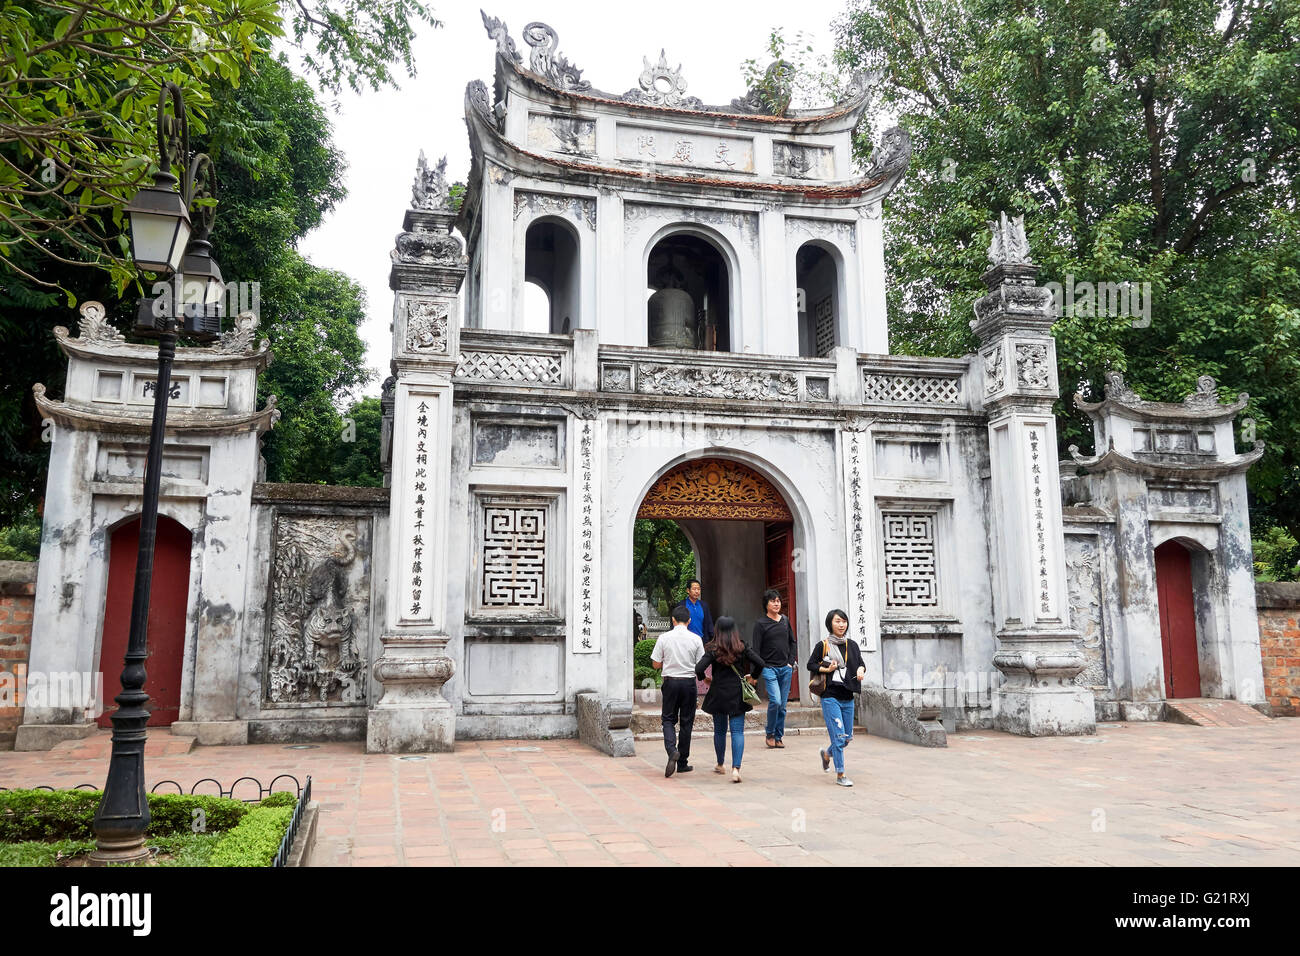 Confucius Temple of Literature main entrance, Hanoi, Vietnam Stock Photo